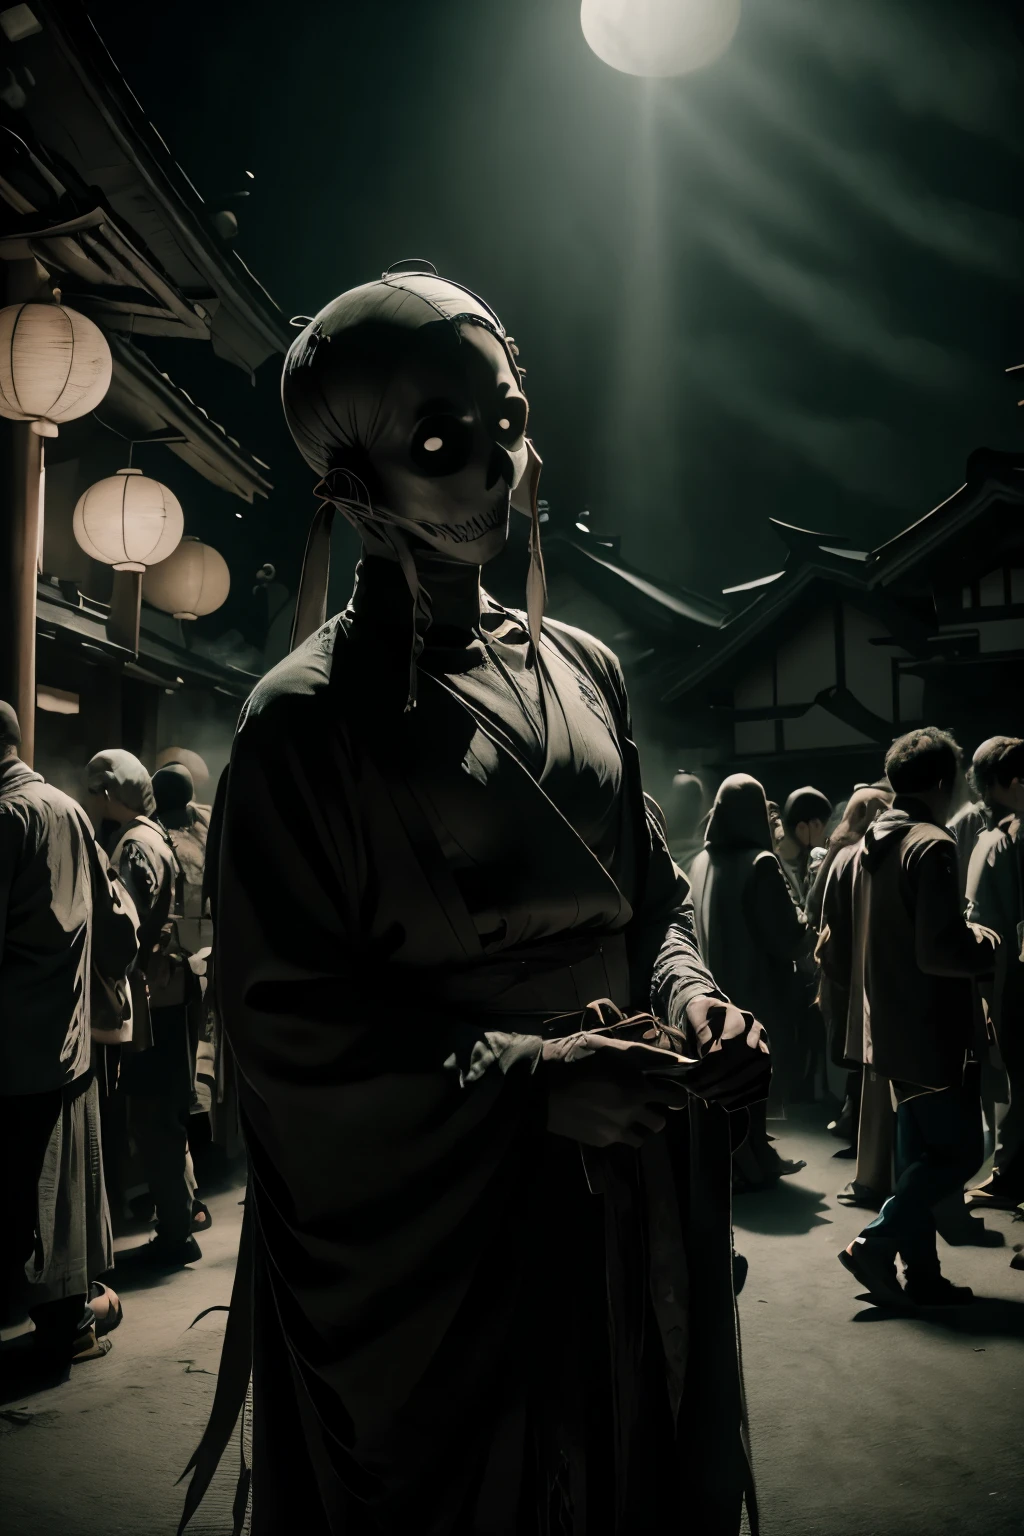 写真 , リアルな写真, 超リアルな日本の不気味な幽霊映画にインスパイアされた写真, 不気味な様々な妖怪の饗宴, 祭りで踊る, 自由奔放な幽霊